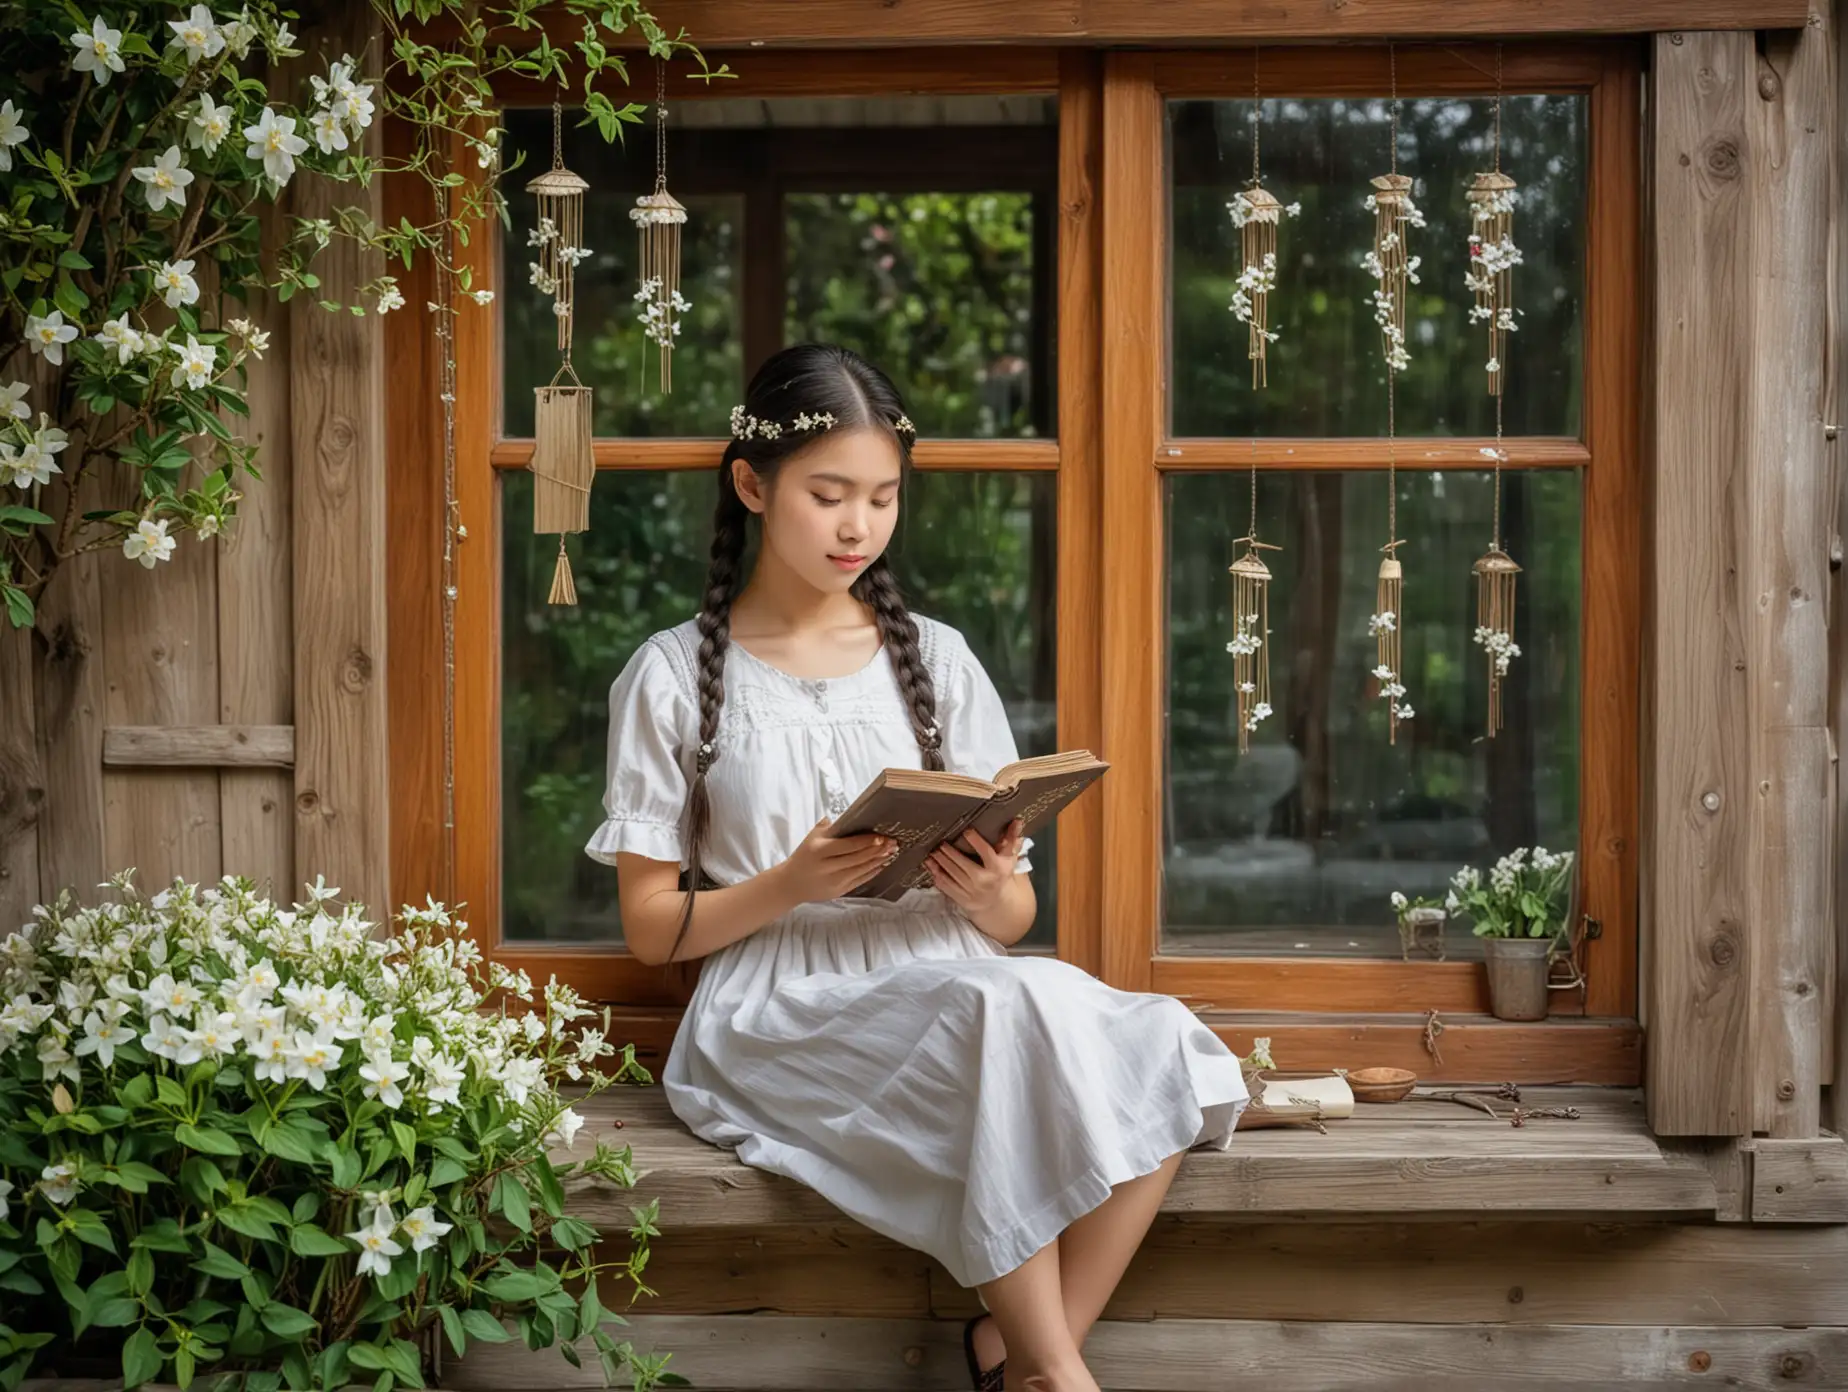 亚洲女孩，两个马尾辫，手中拿着一本书，坐在小木屋的窗前，木制框架玻璃窗，窗前有一串风铃，窗下有几朵白色玉兰花